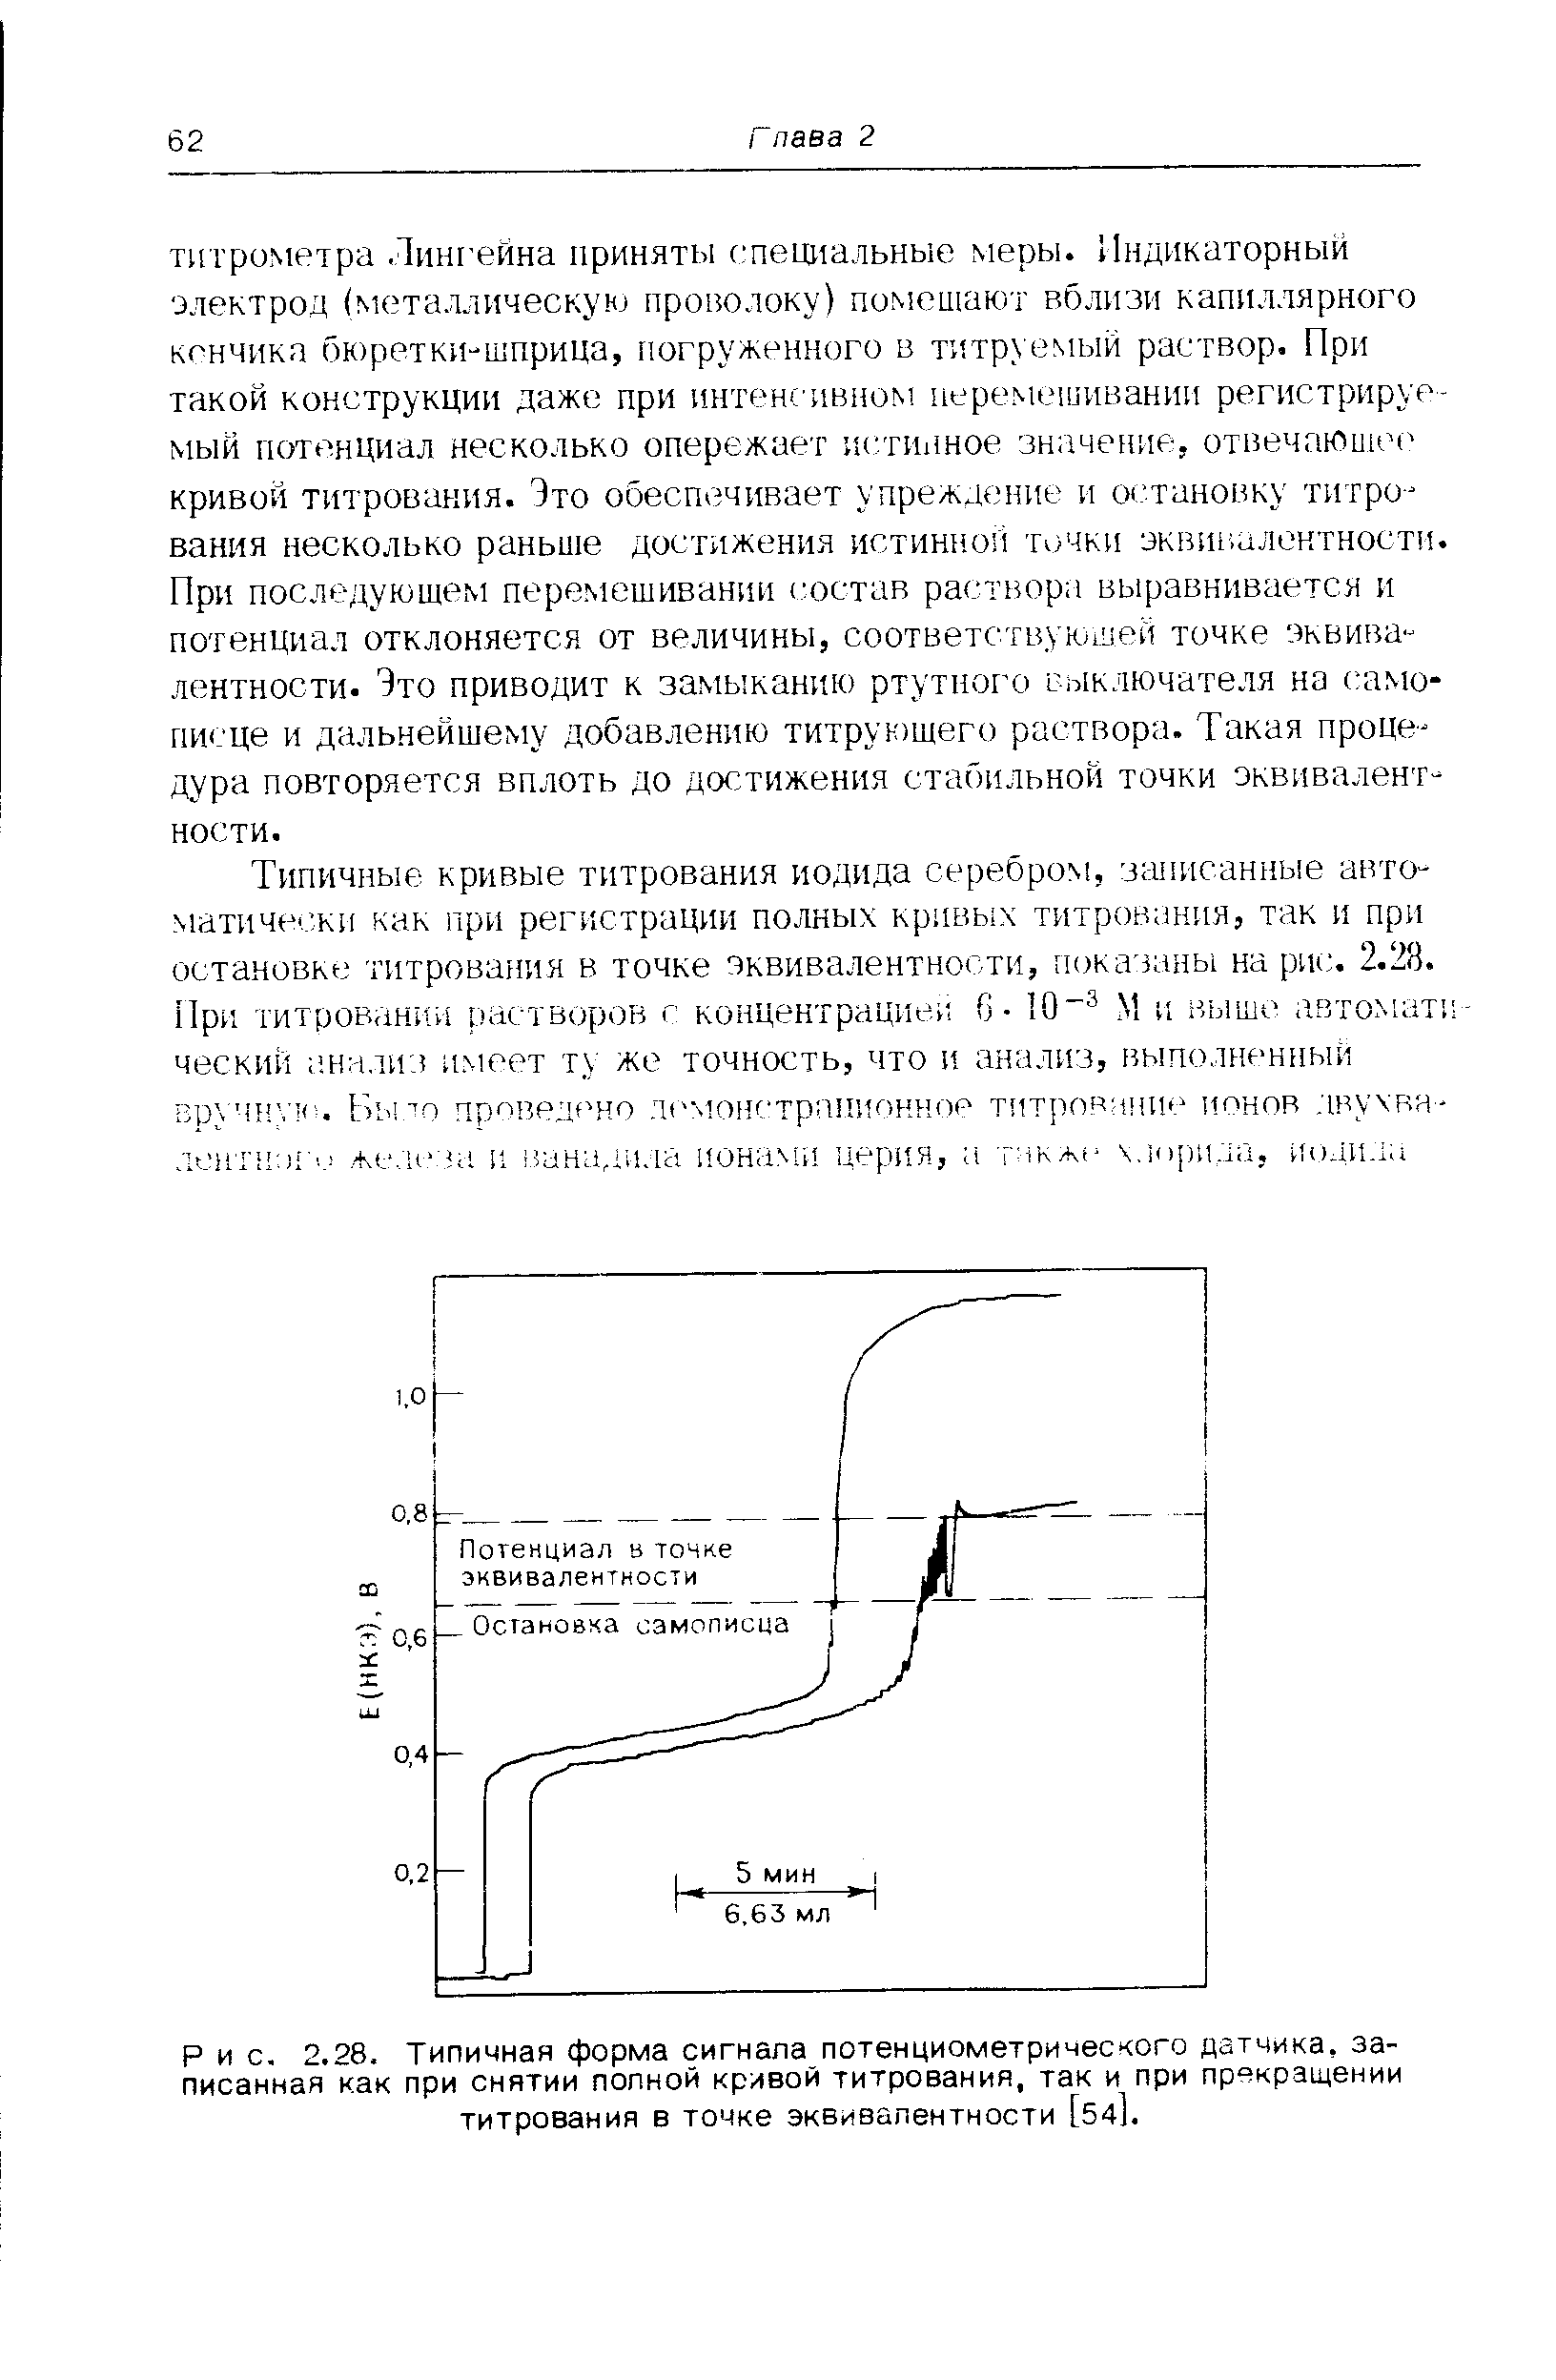 Рис. 2.28. Типичная форма сигнала потенциометрического датчика, записанная как при снятии полной кривой титрования, так и при прекращении титрования в точке эквивалентности [54].